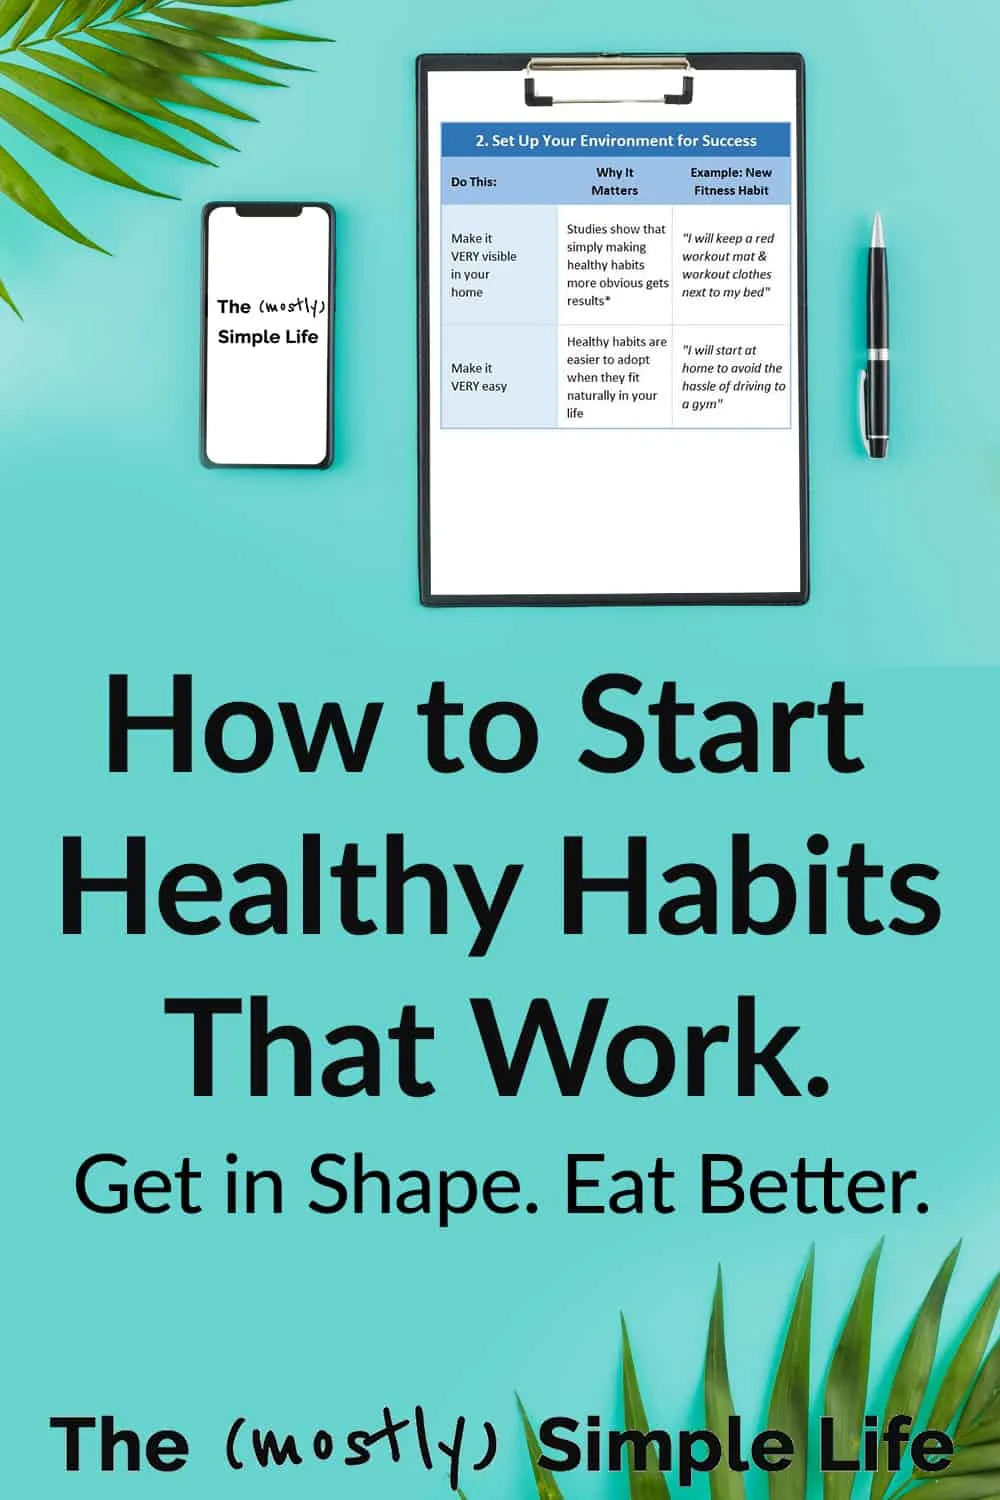 Top 3 Ways to Build Healthy Habits (The Healthy Habit Scorecard)